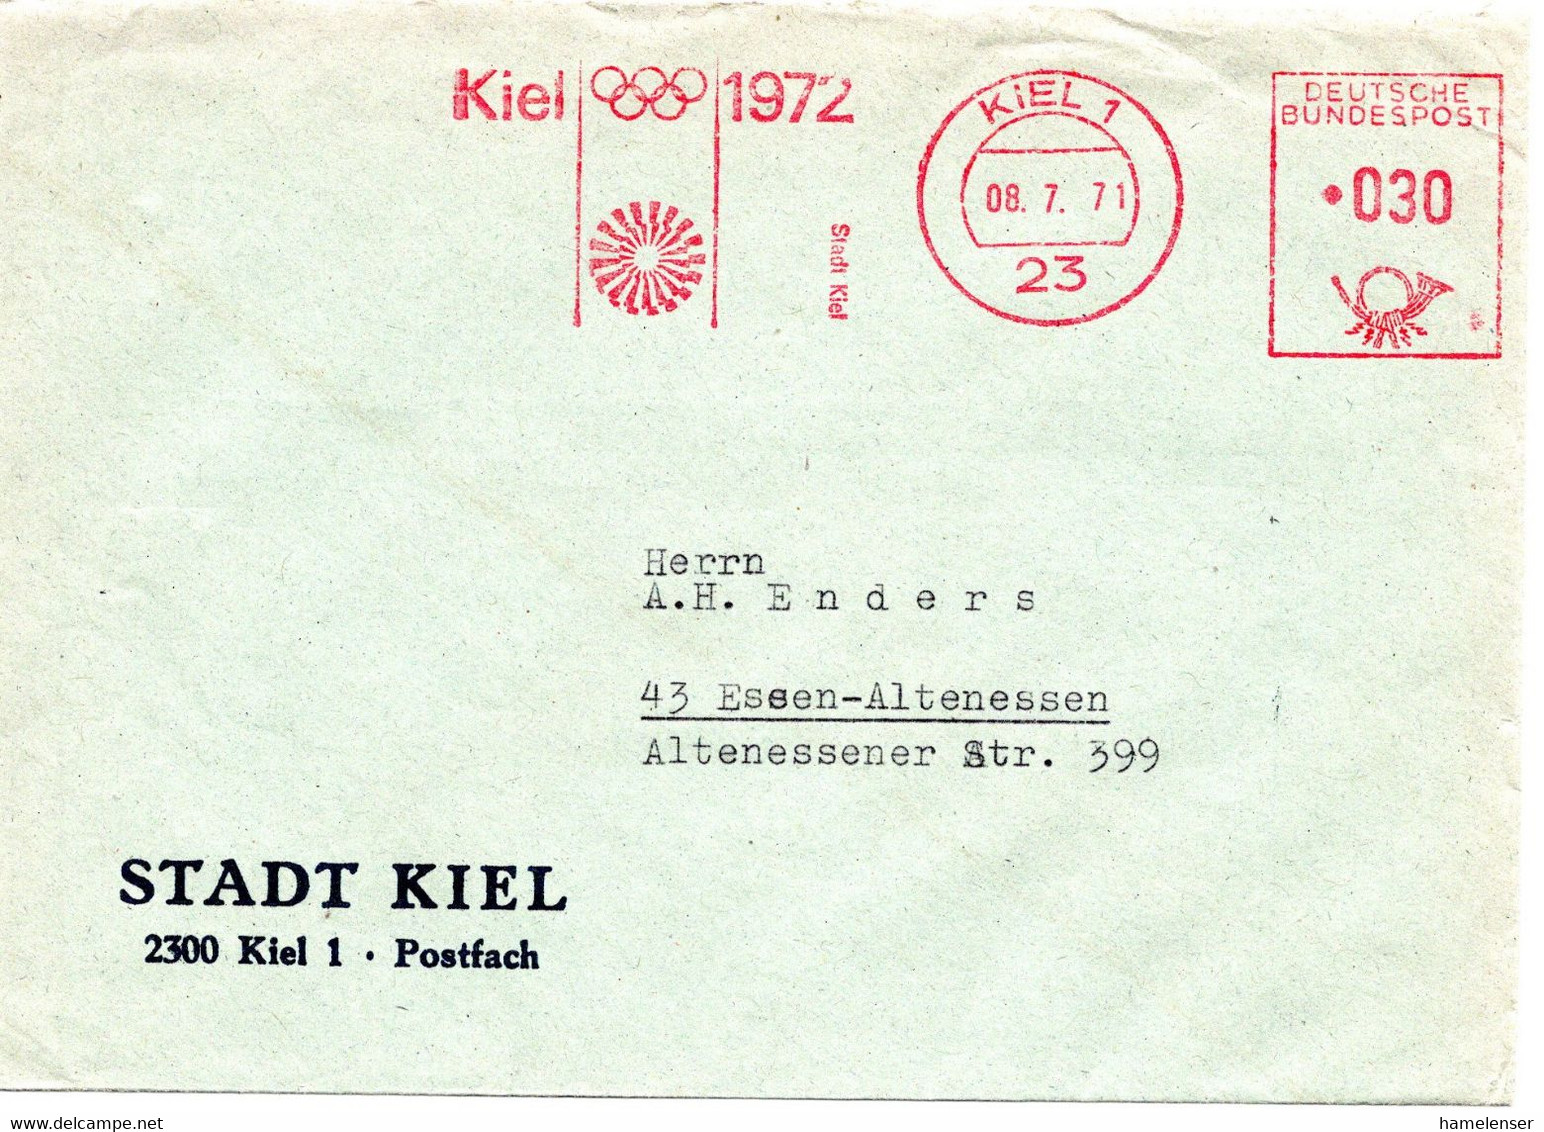 56277 - Bund - 1971 - 30Pfg AbsFreistpl KIEL - KIEL 1972 STADT KIEL -> Essen - Summer 1972: Munich